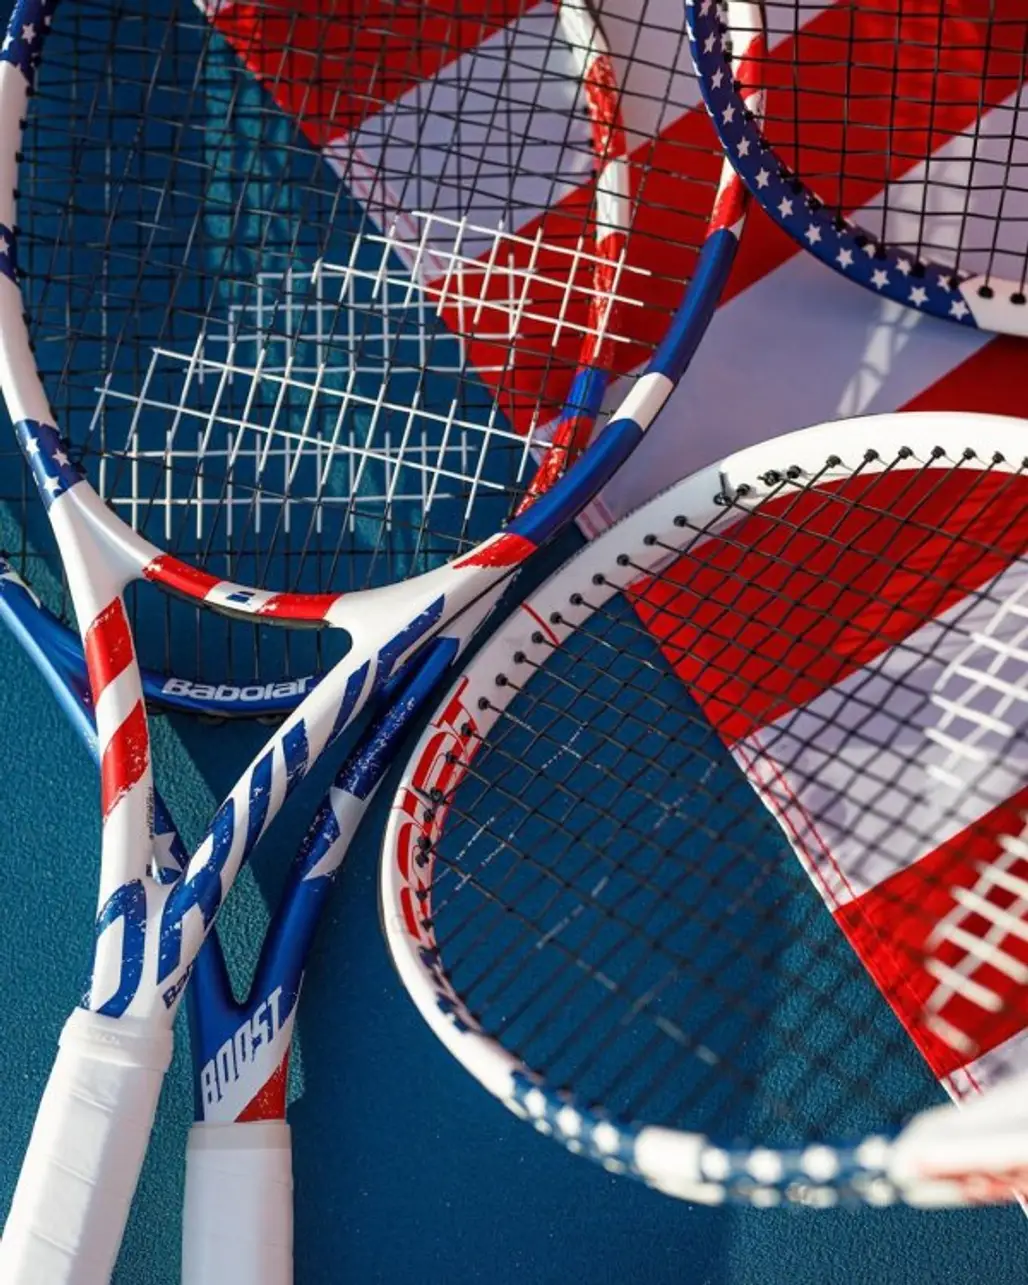 Racket, Tennis racket, Tennis Equipment, Rackets, Racquet sport,